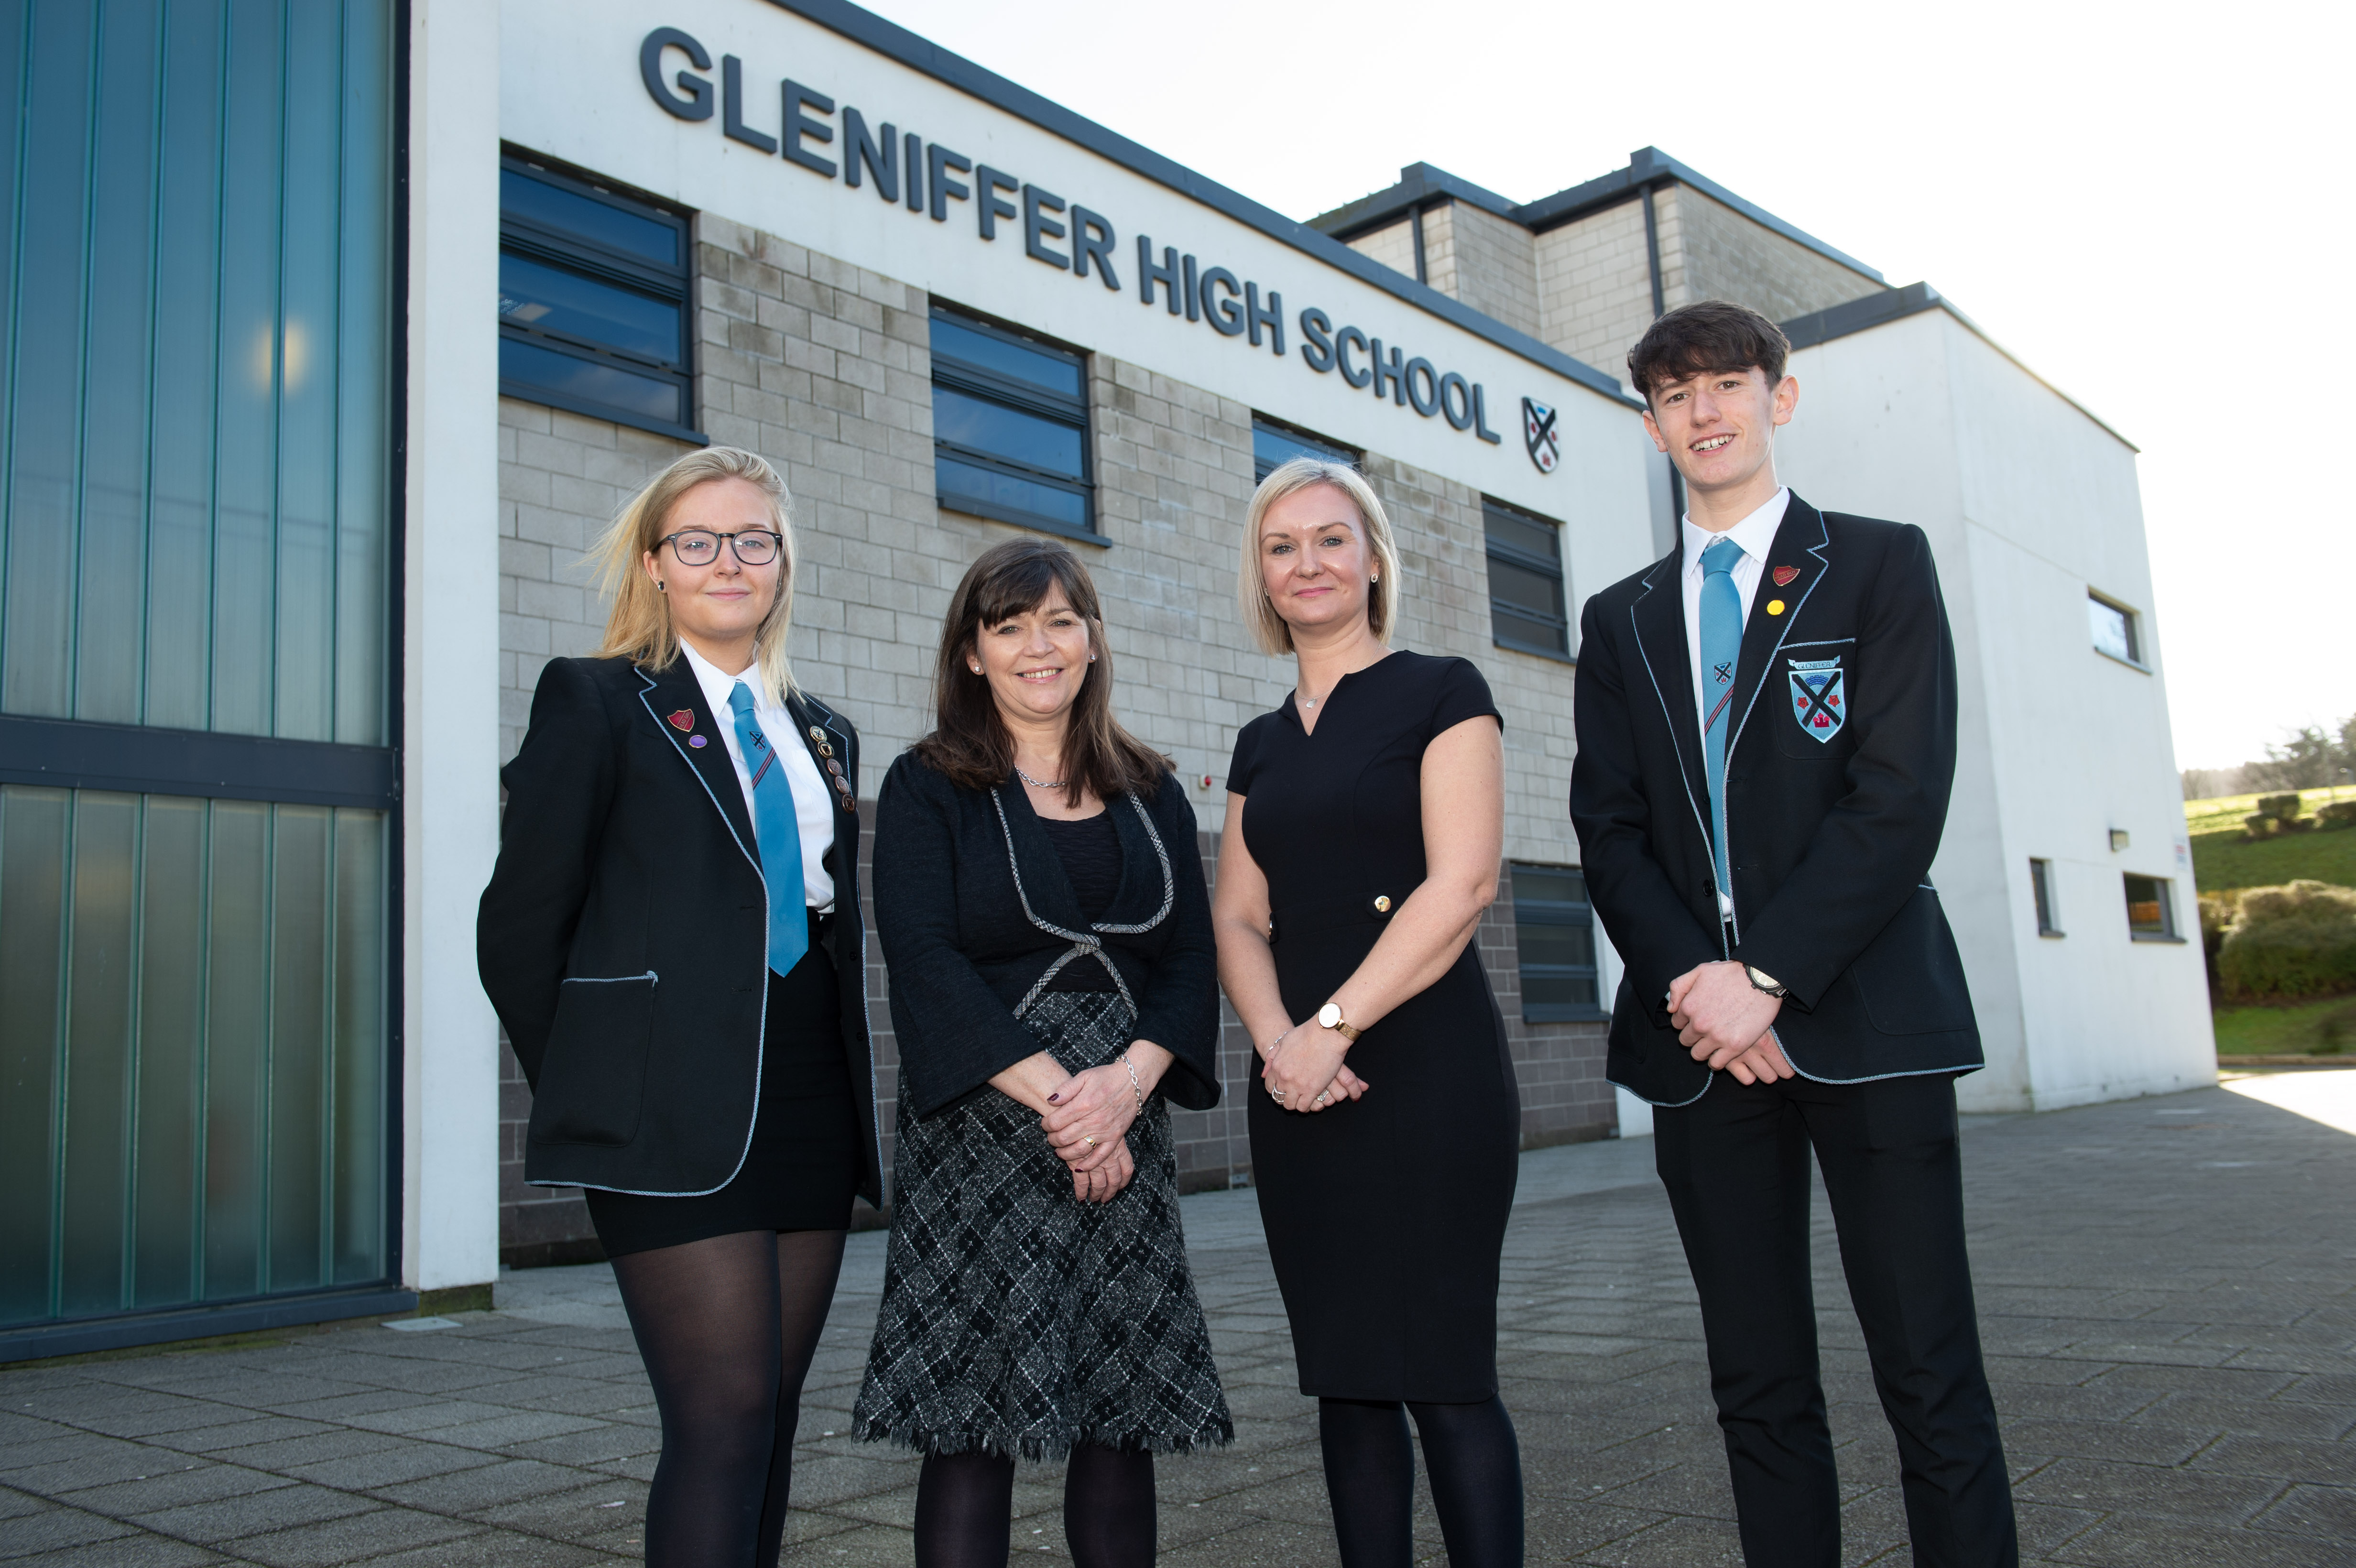 Gleniffer High